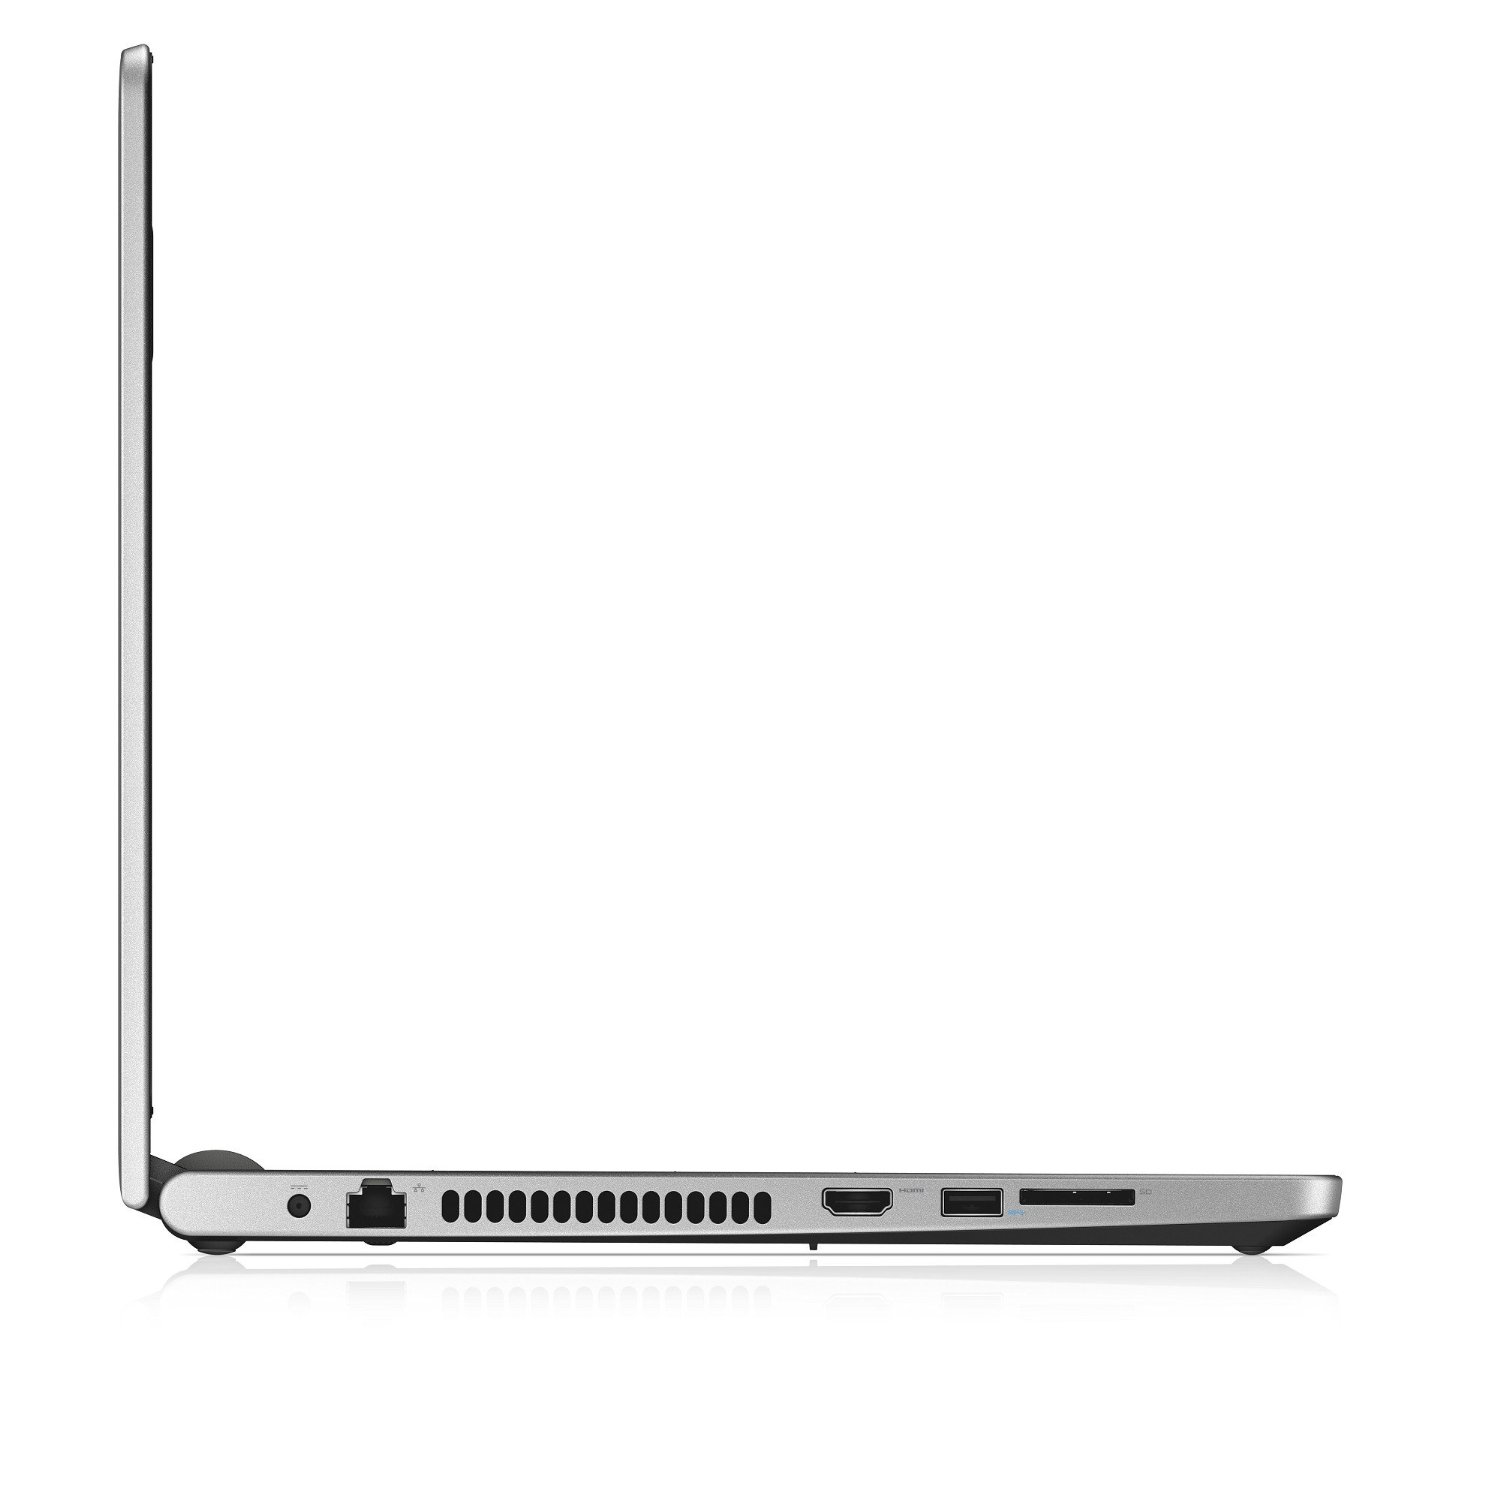 Laptop Dell Inspiron 5559A P51F001/004 TI781004 (Silver)